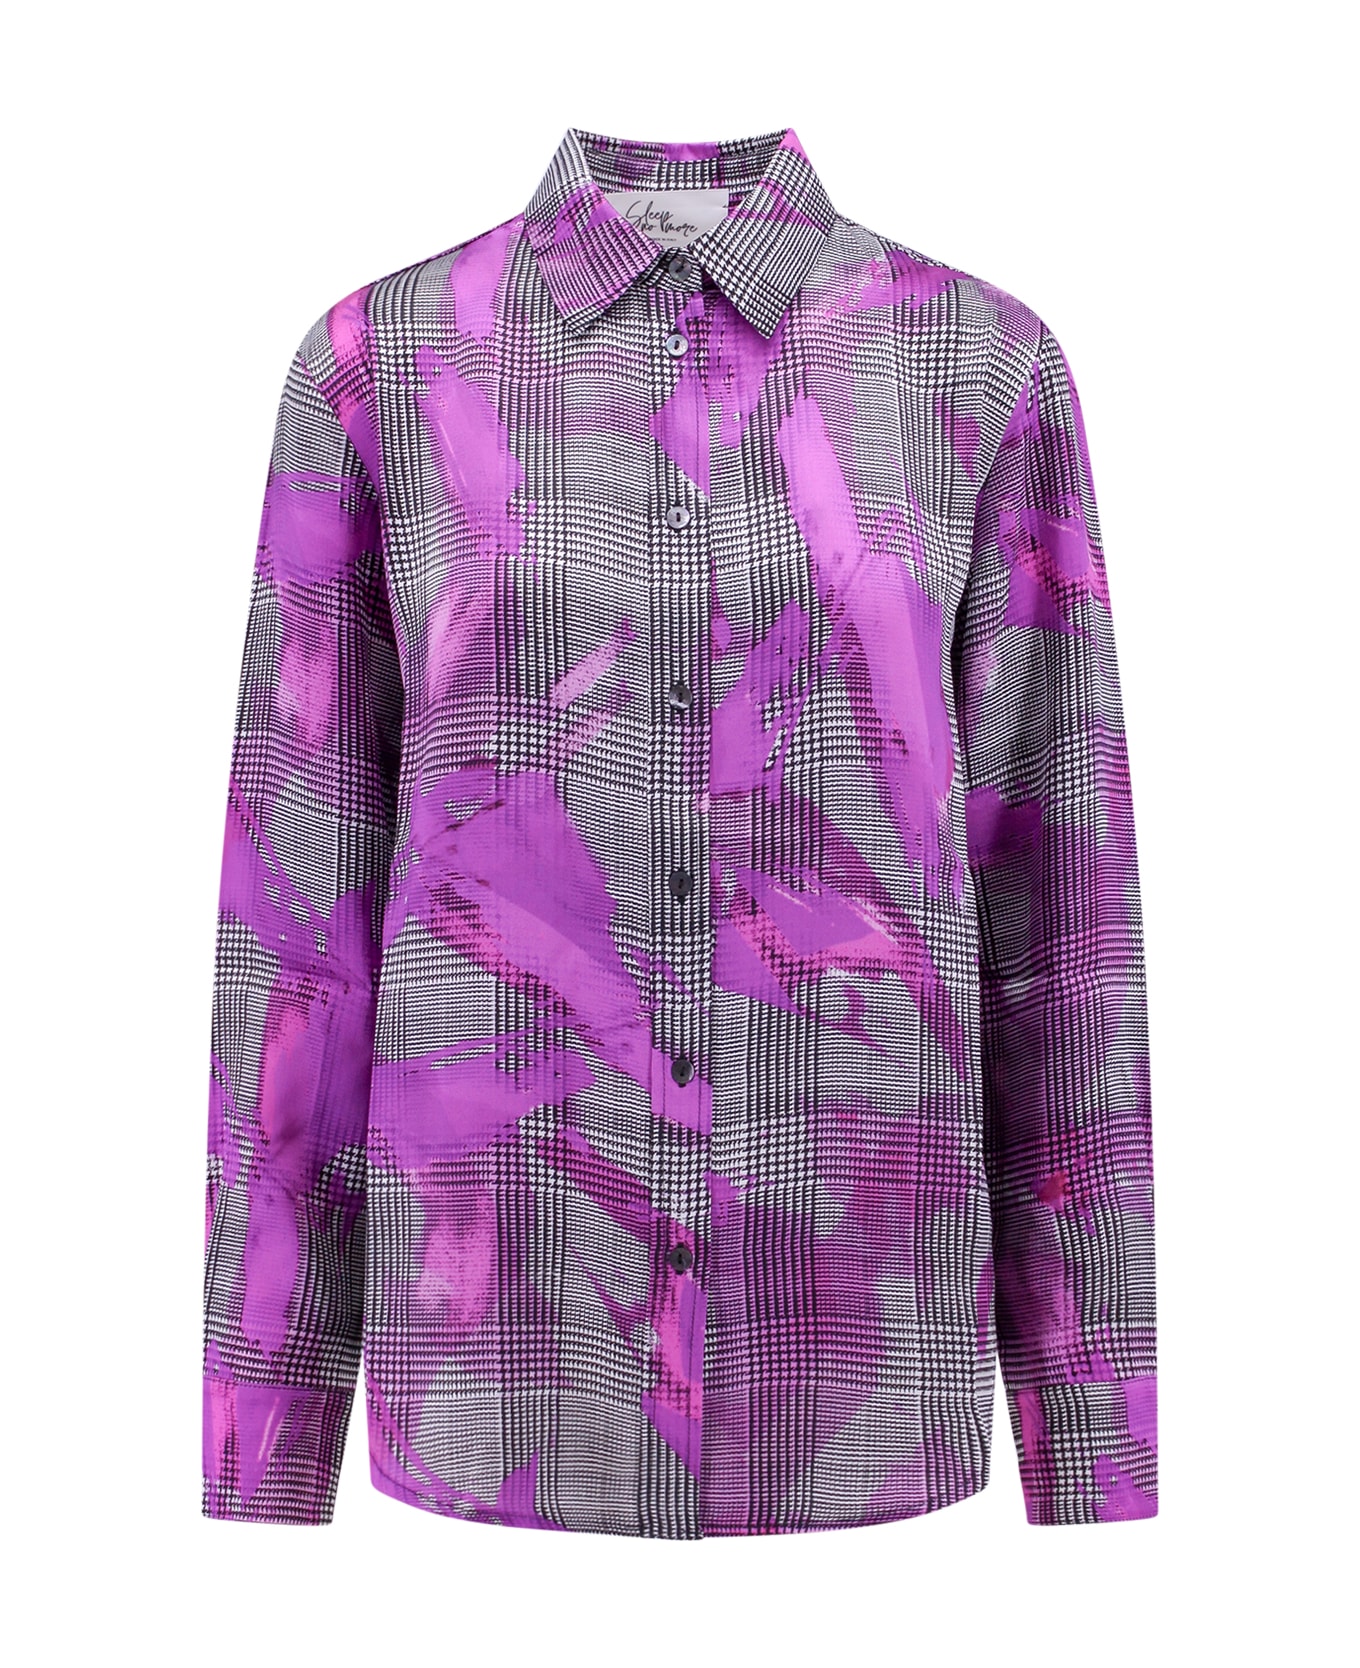 Sleep No More Shirt - Purple